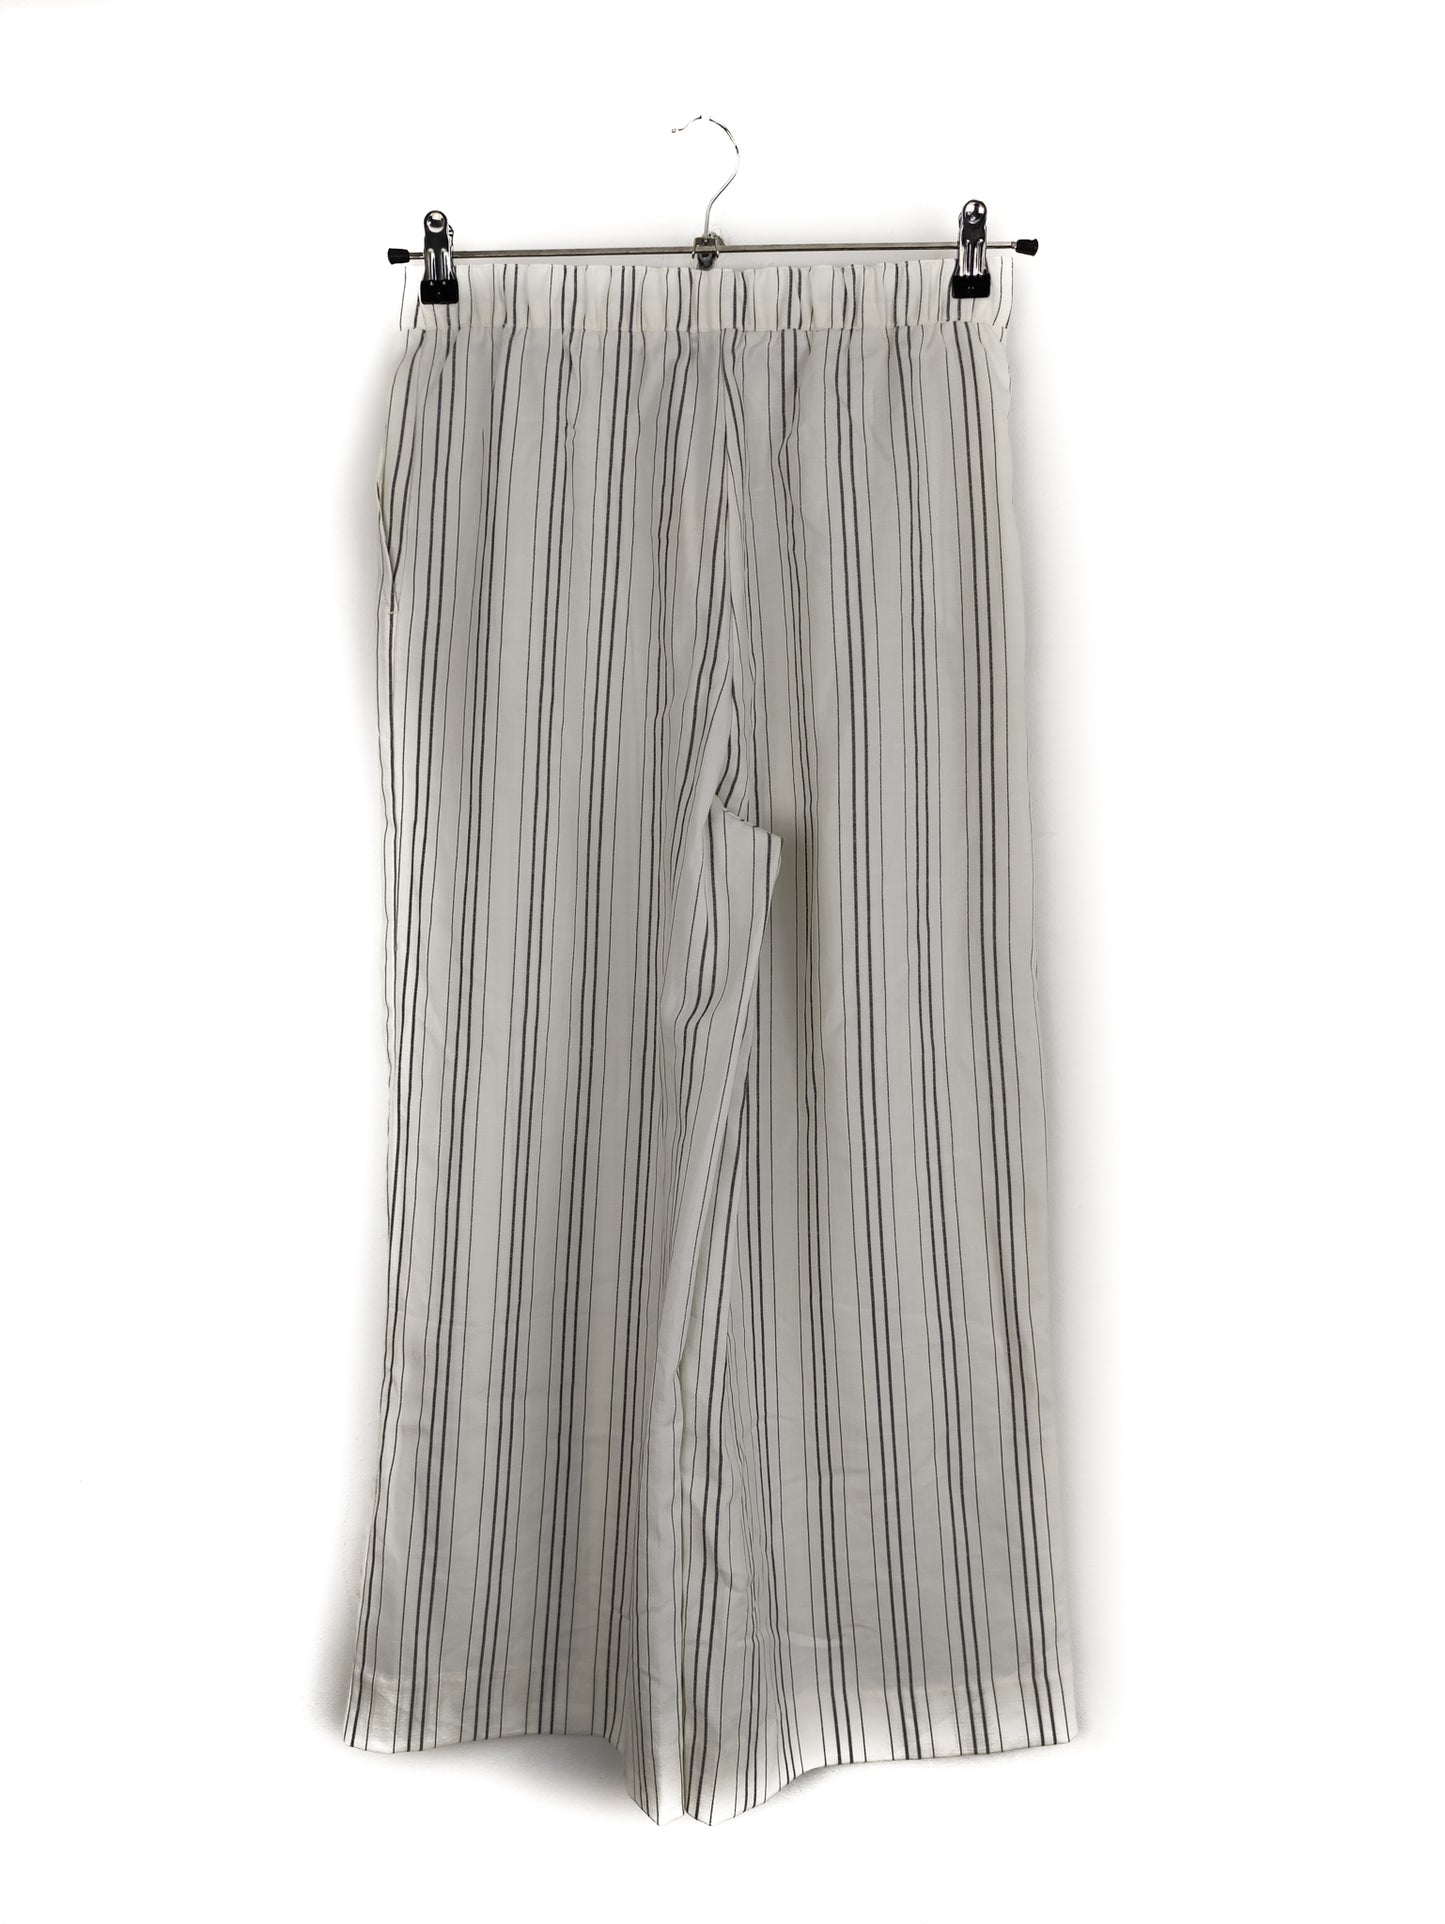 Γυναικεία Παντελόνα NEW LOOK σε Λευκό χρώμα (Medium)